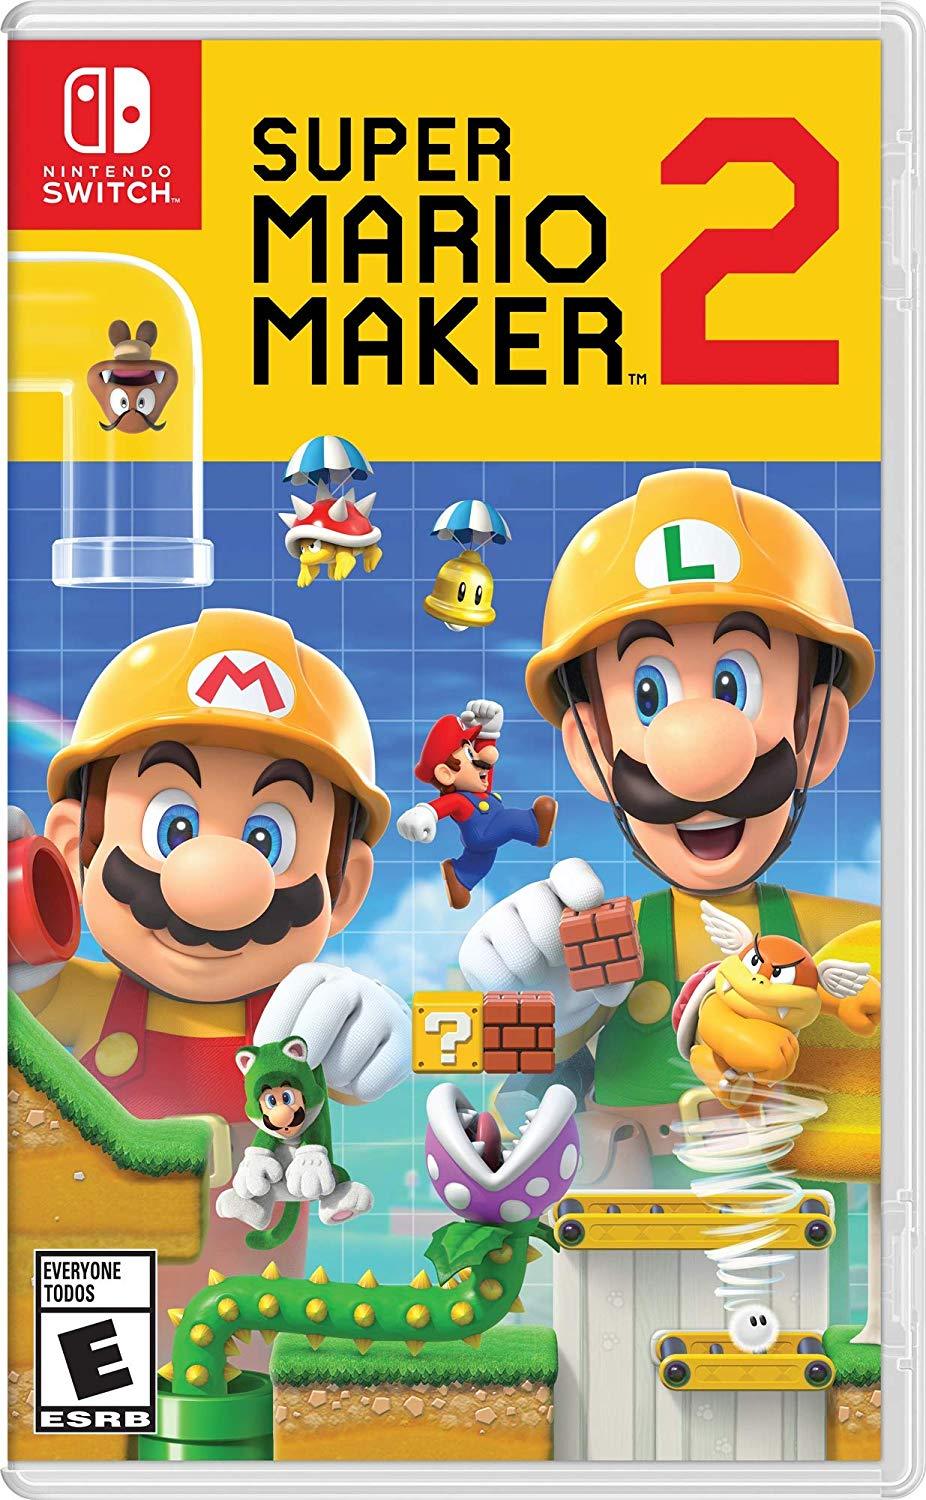 Super Mario Maker 2 (US)